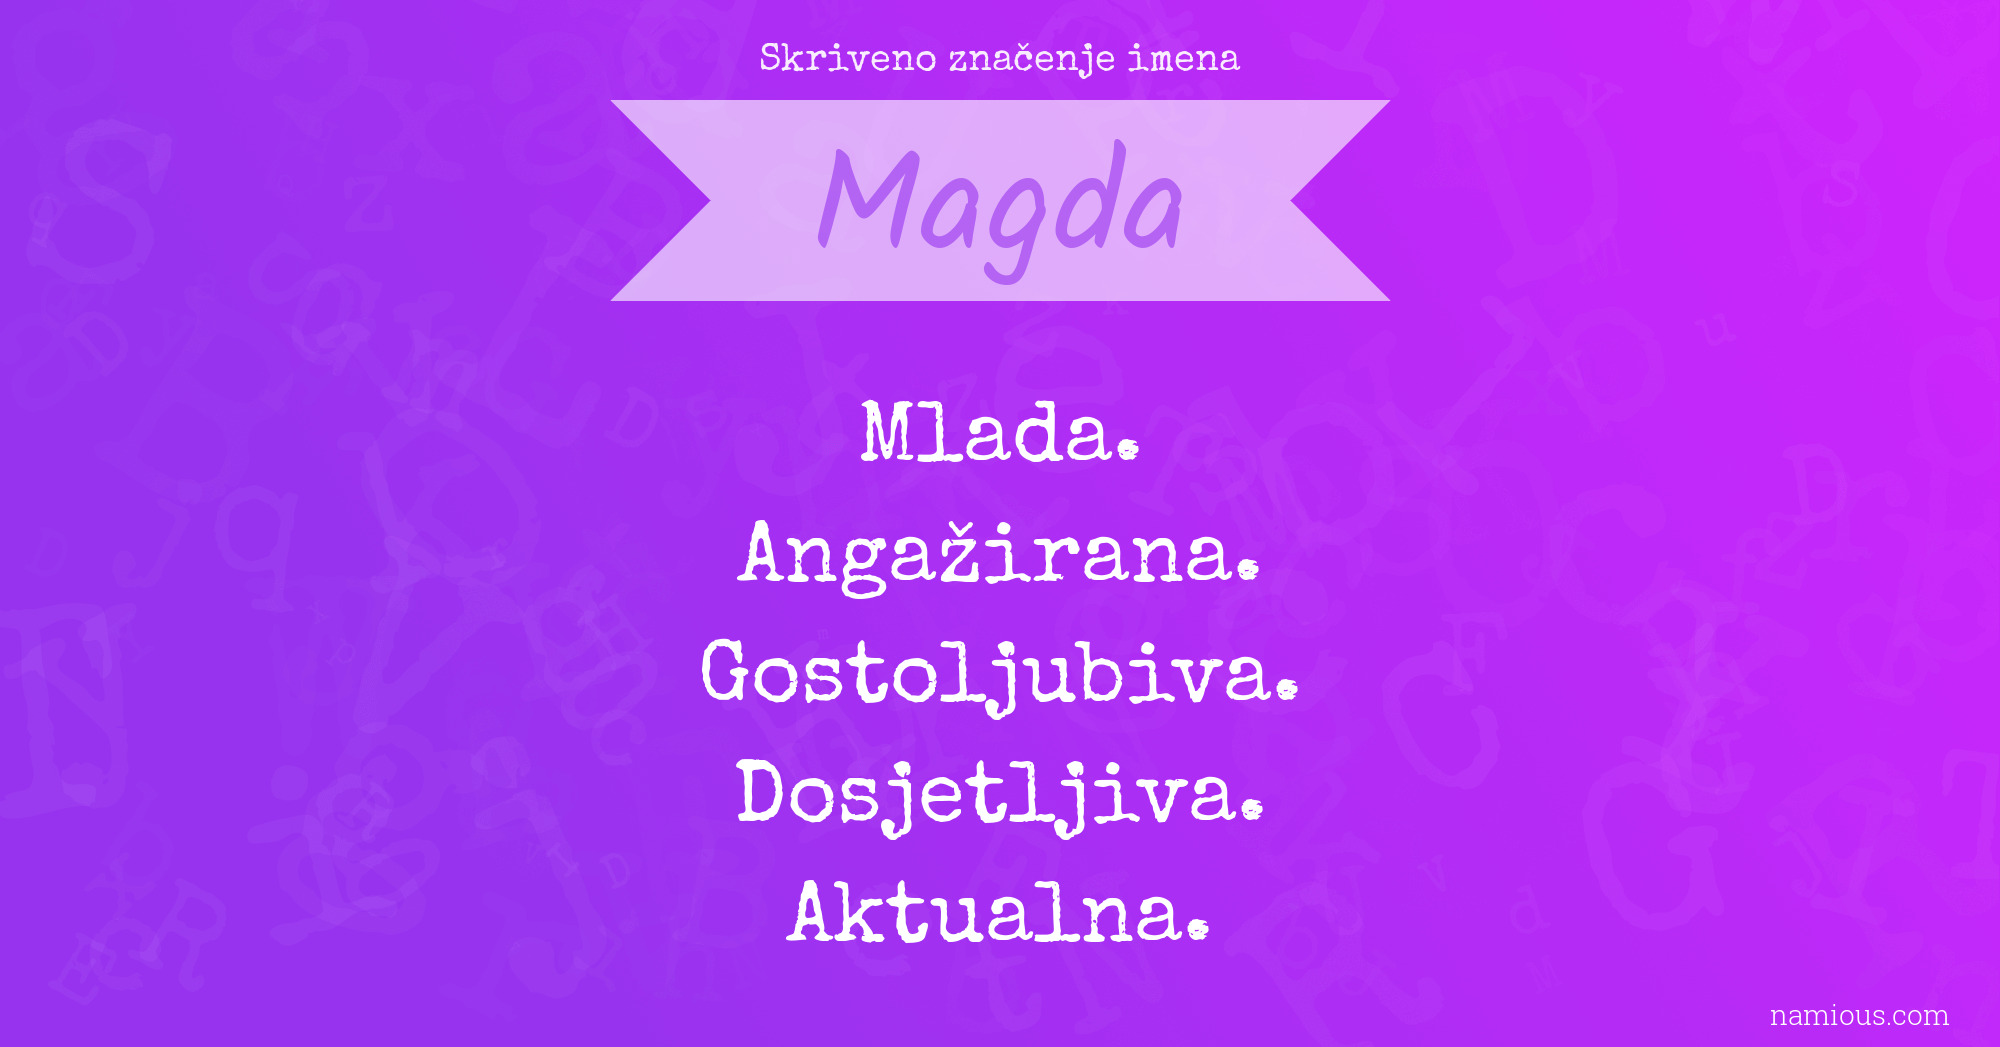 Skriveno značenje imena Magda